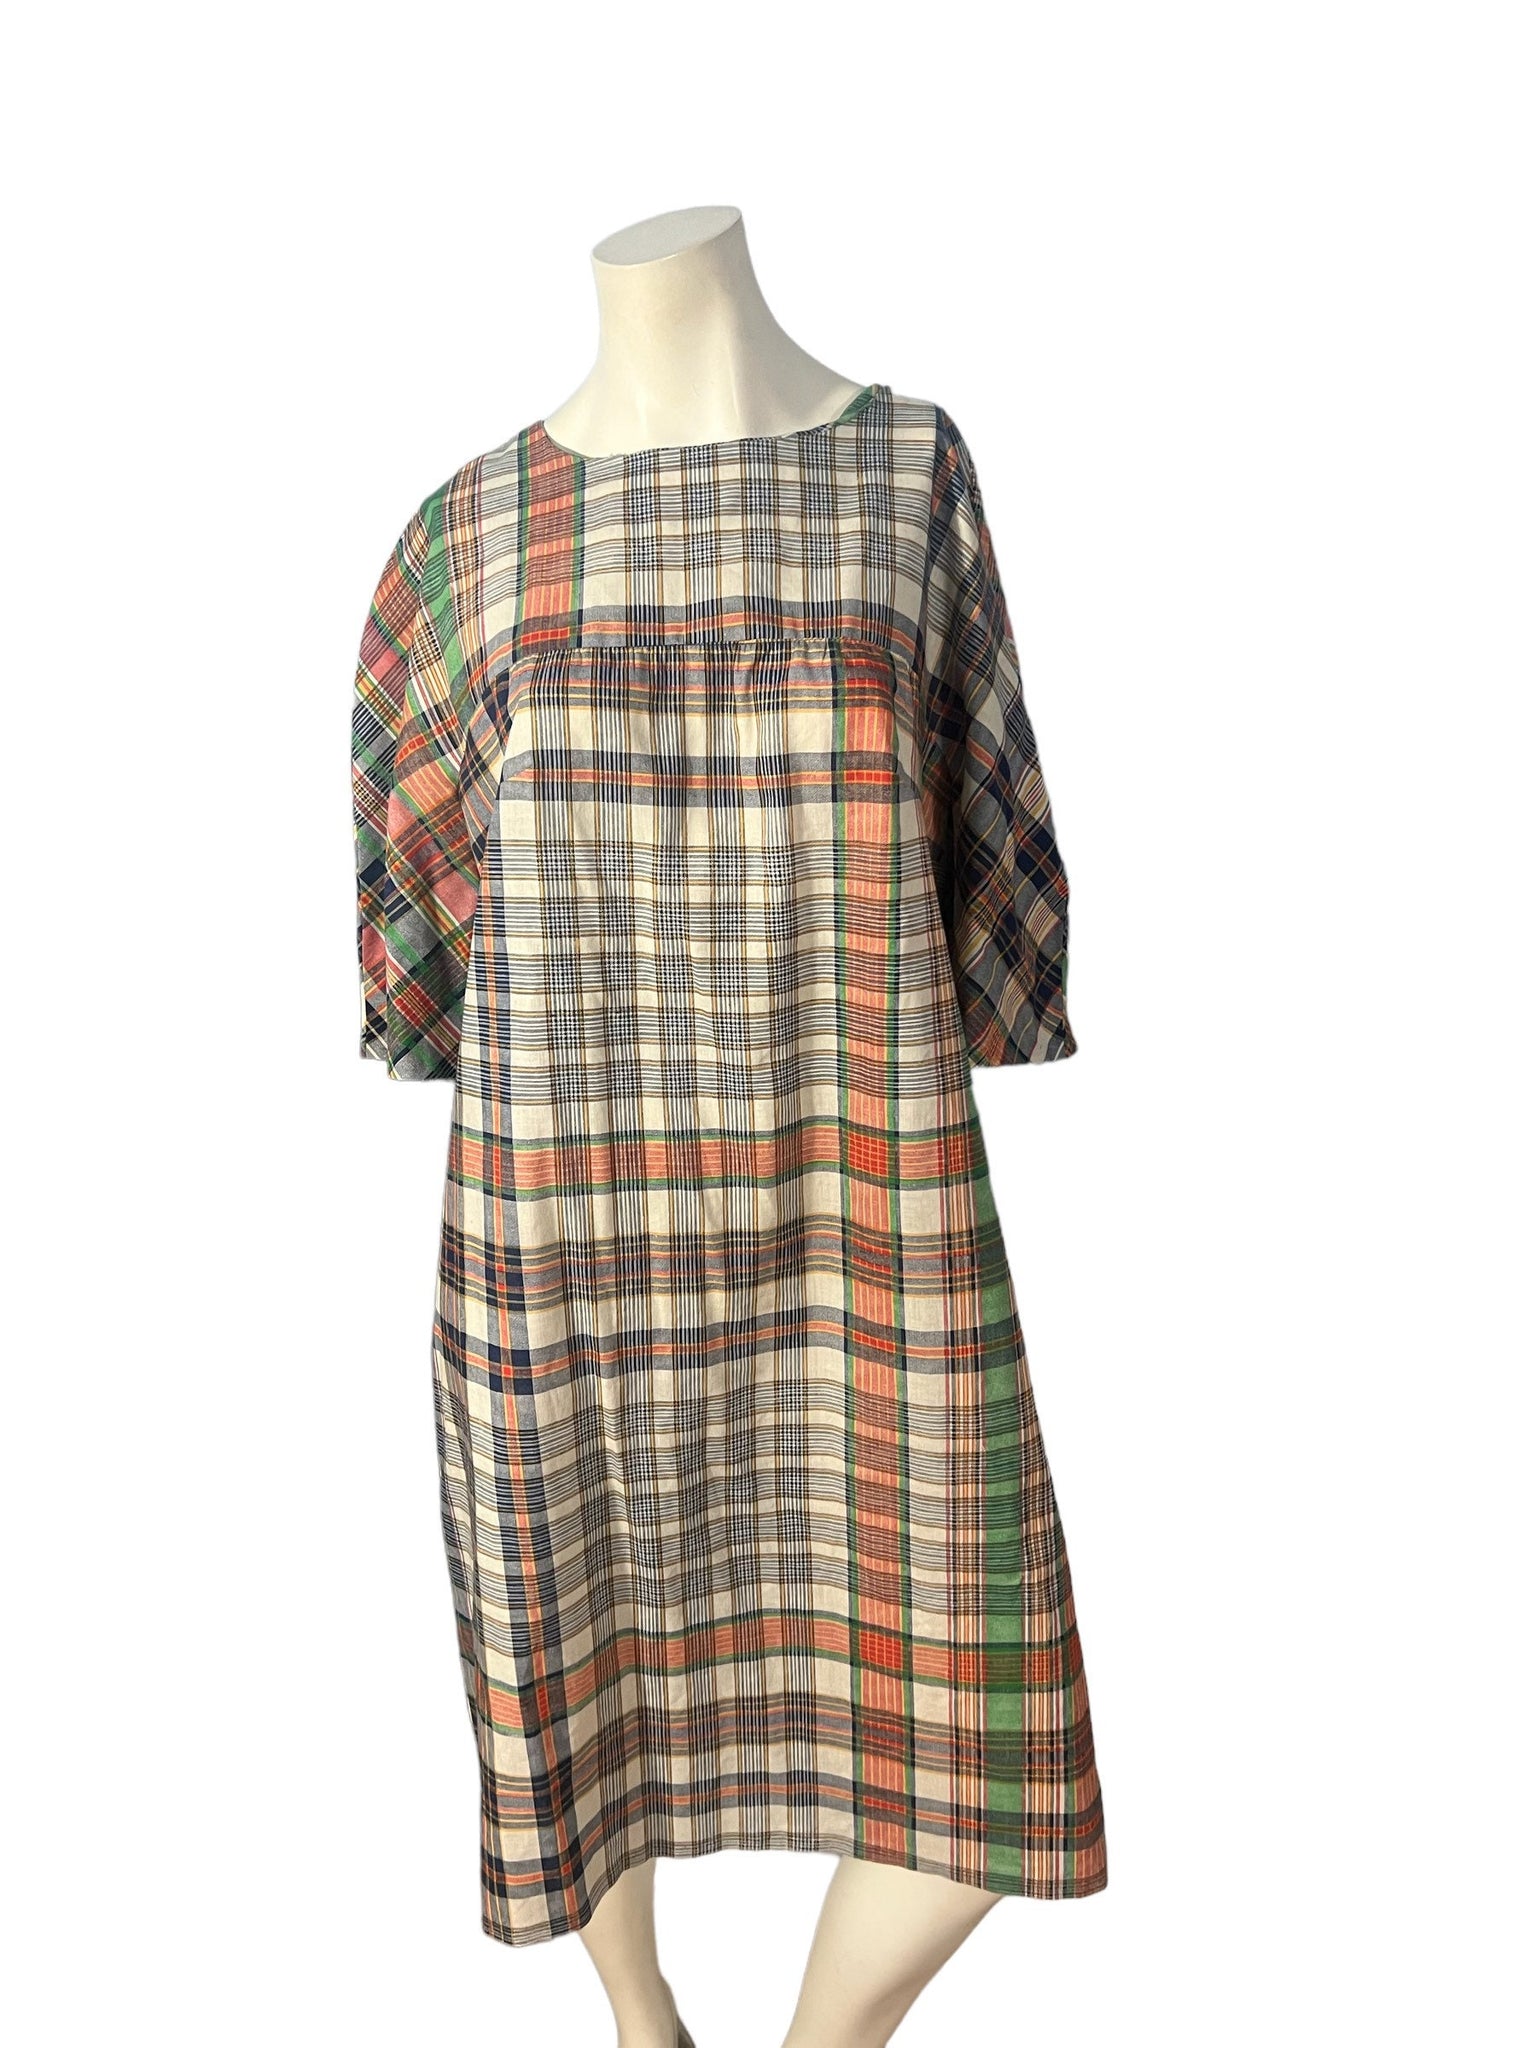 Vintage cotton plaid house dress L XL